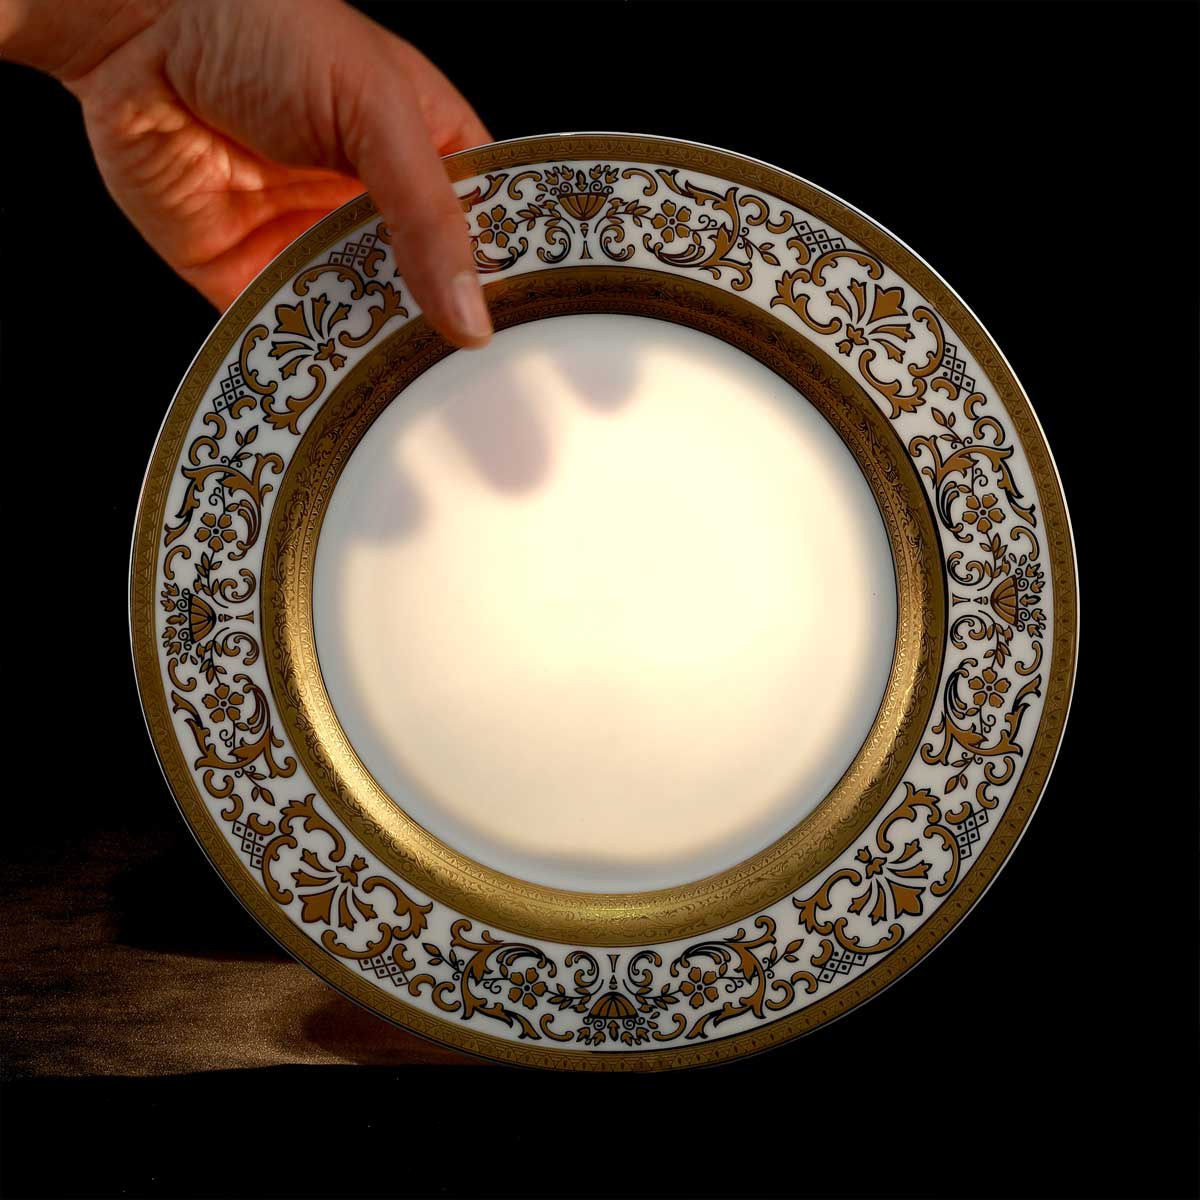 Servizio piatti elegante in porcellana trasparente con decorazione in oro - Prestige